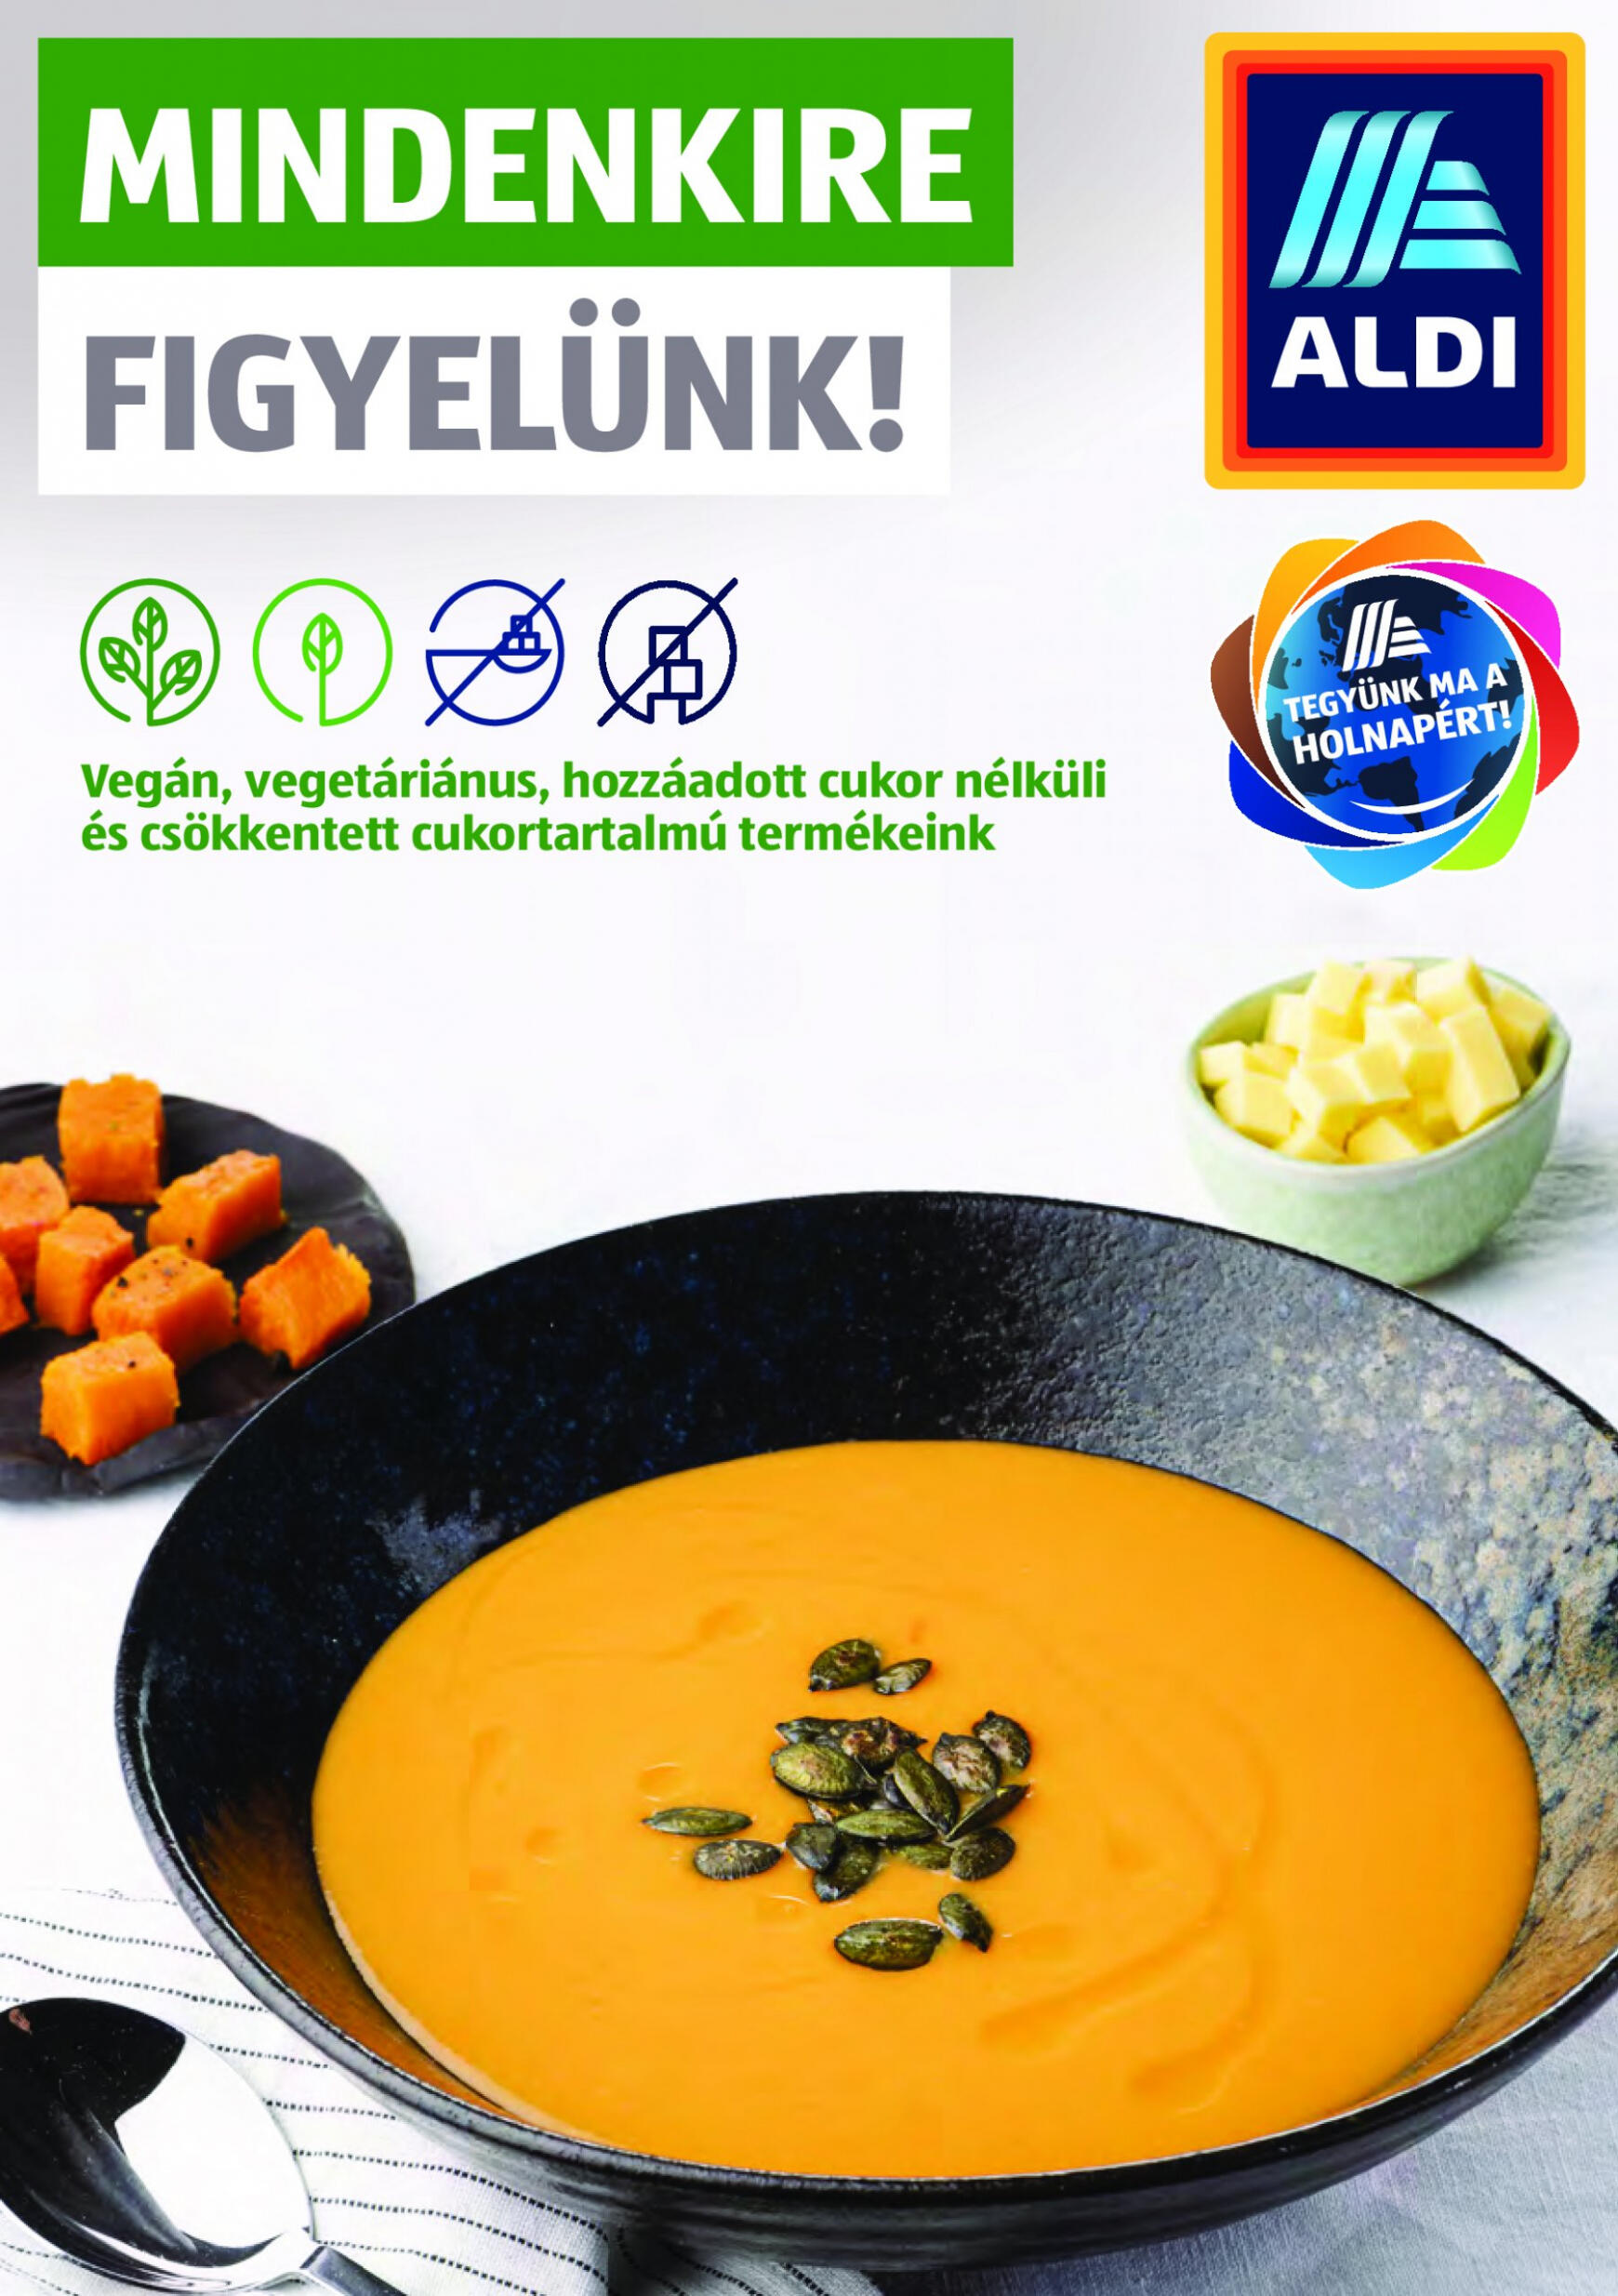 aldi - Aktuális újság ALDI - Mindenkire figyelünk! 04.11. - 04.30.